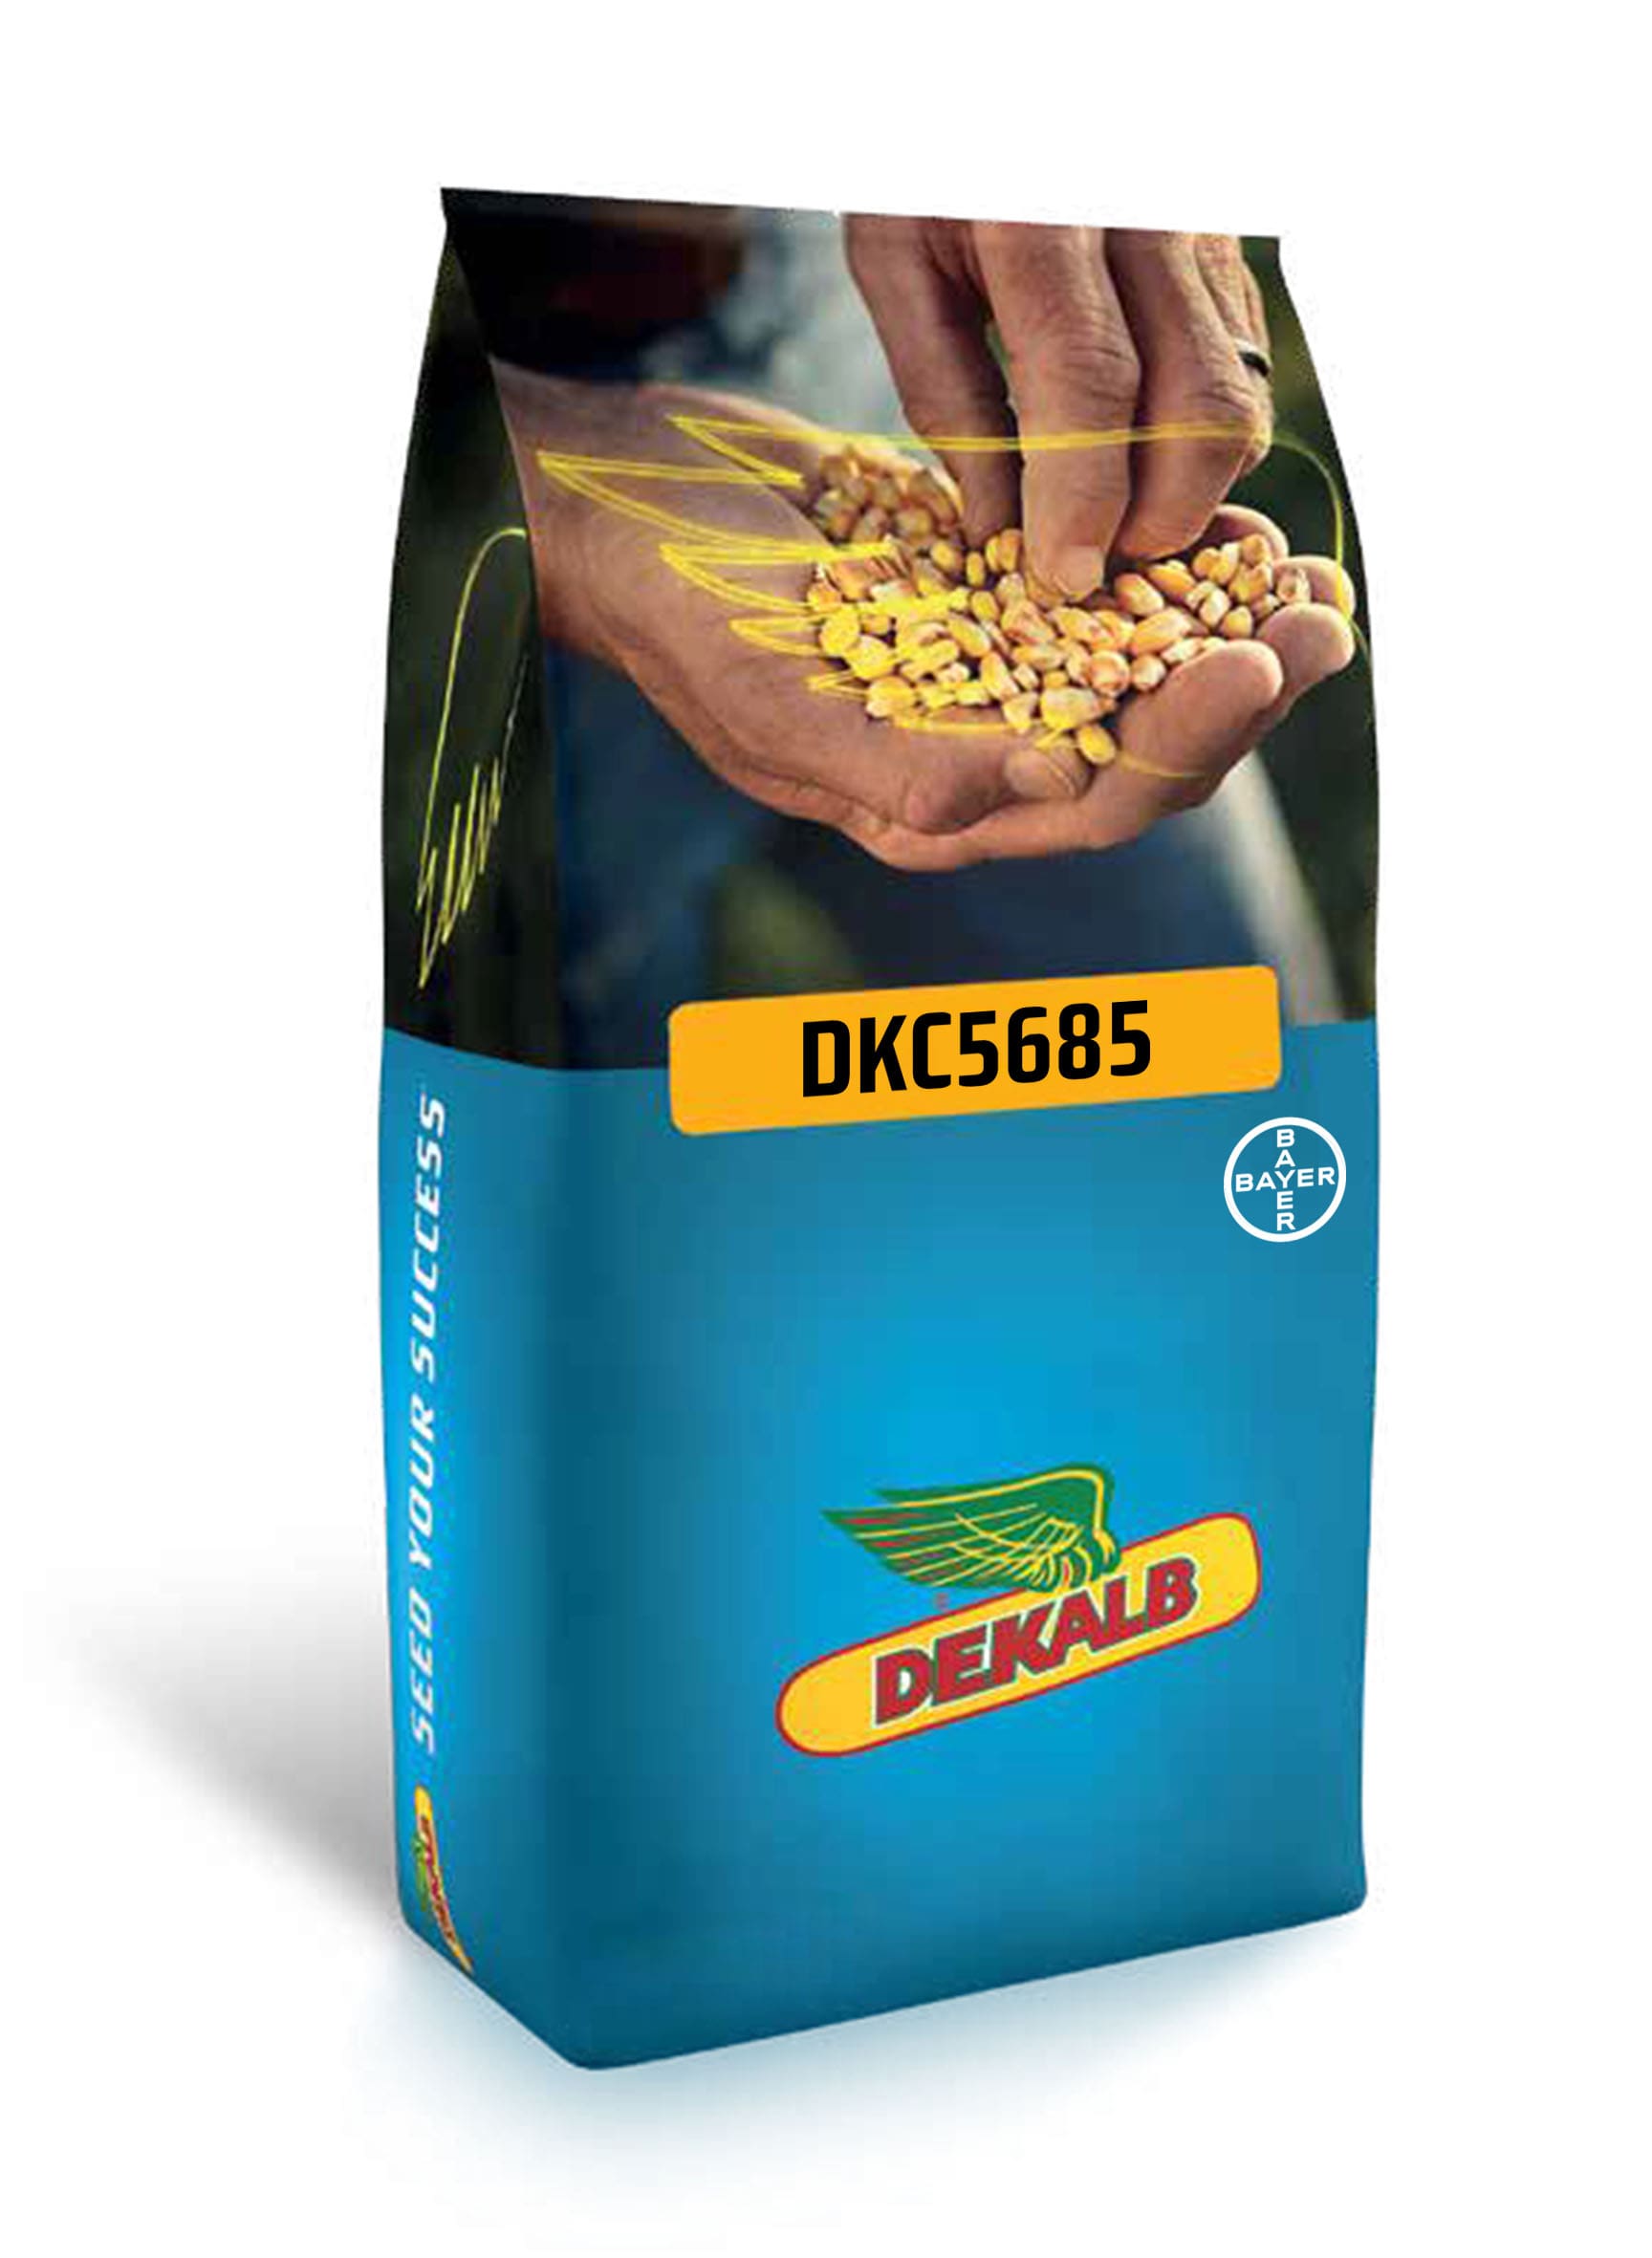 DKC5685